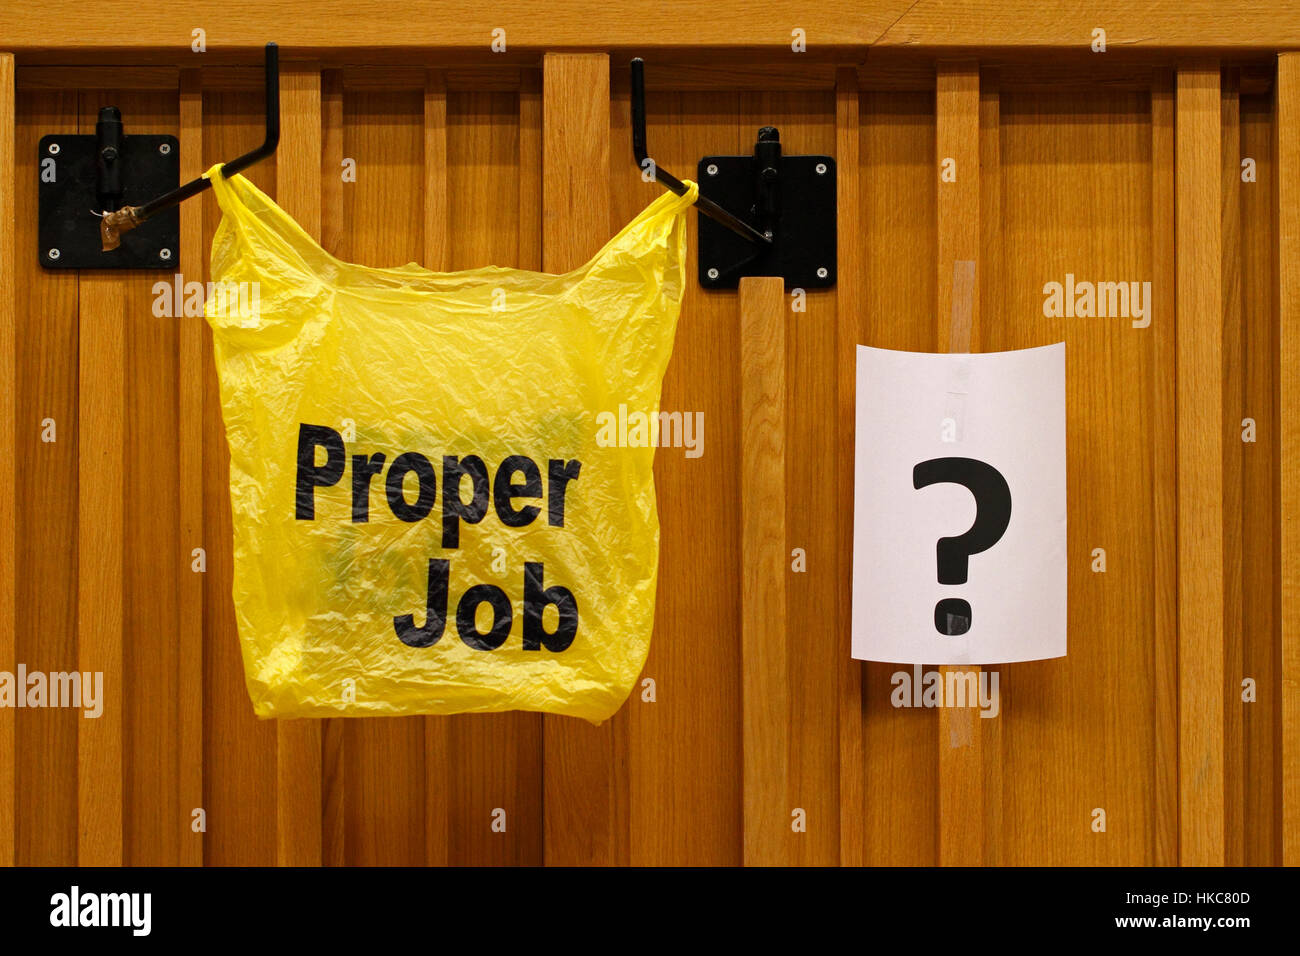 Got a proper job? Stock Photo